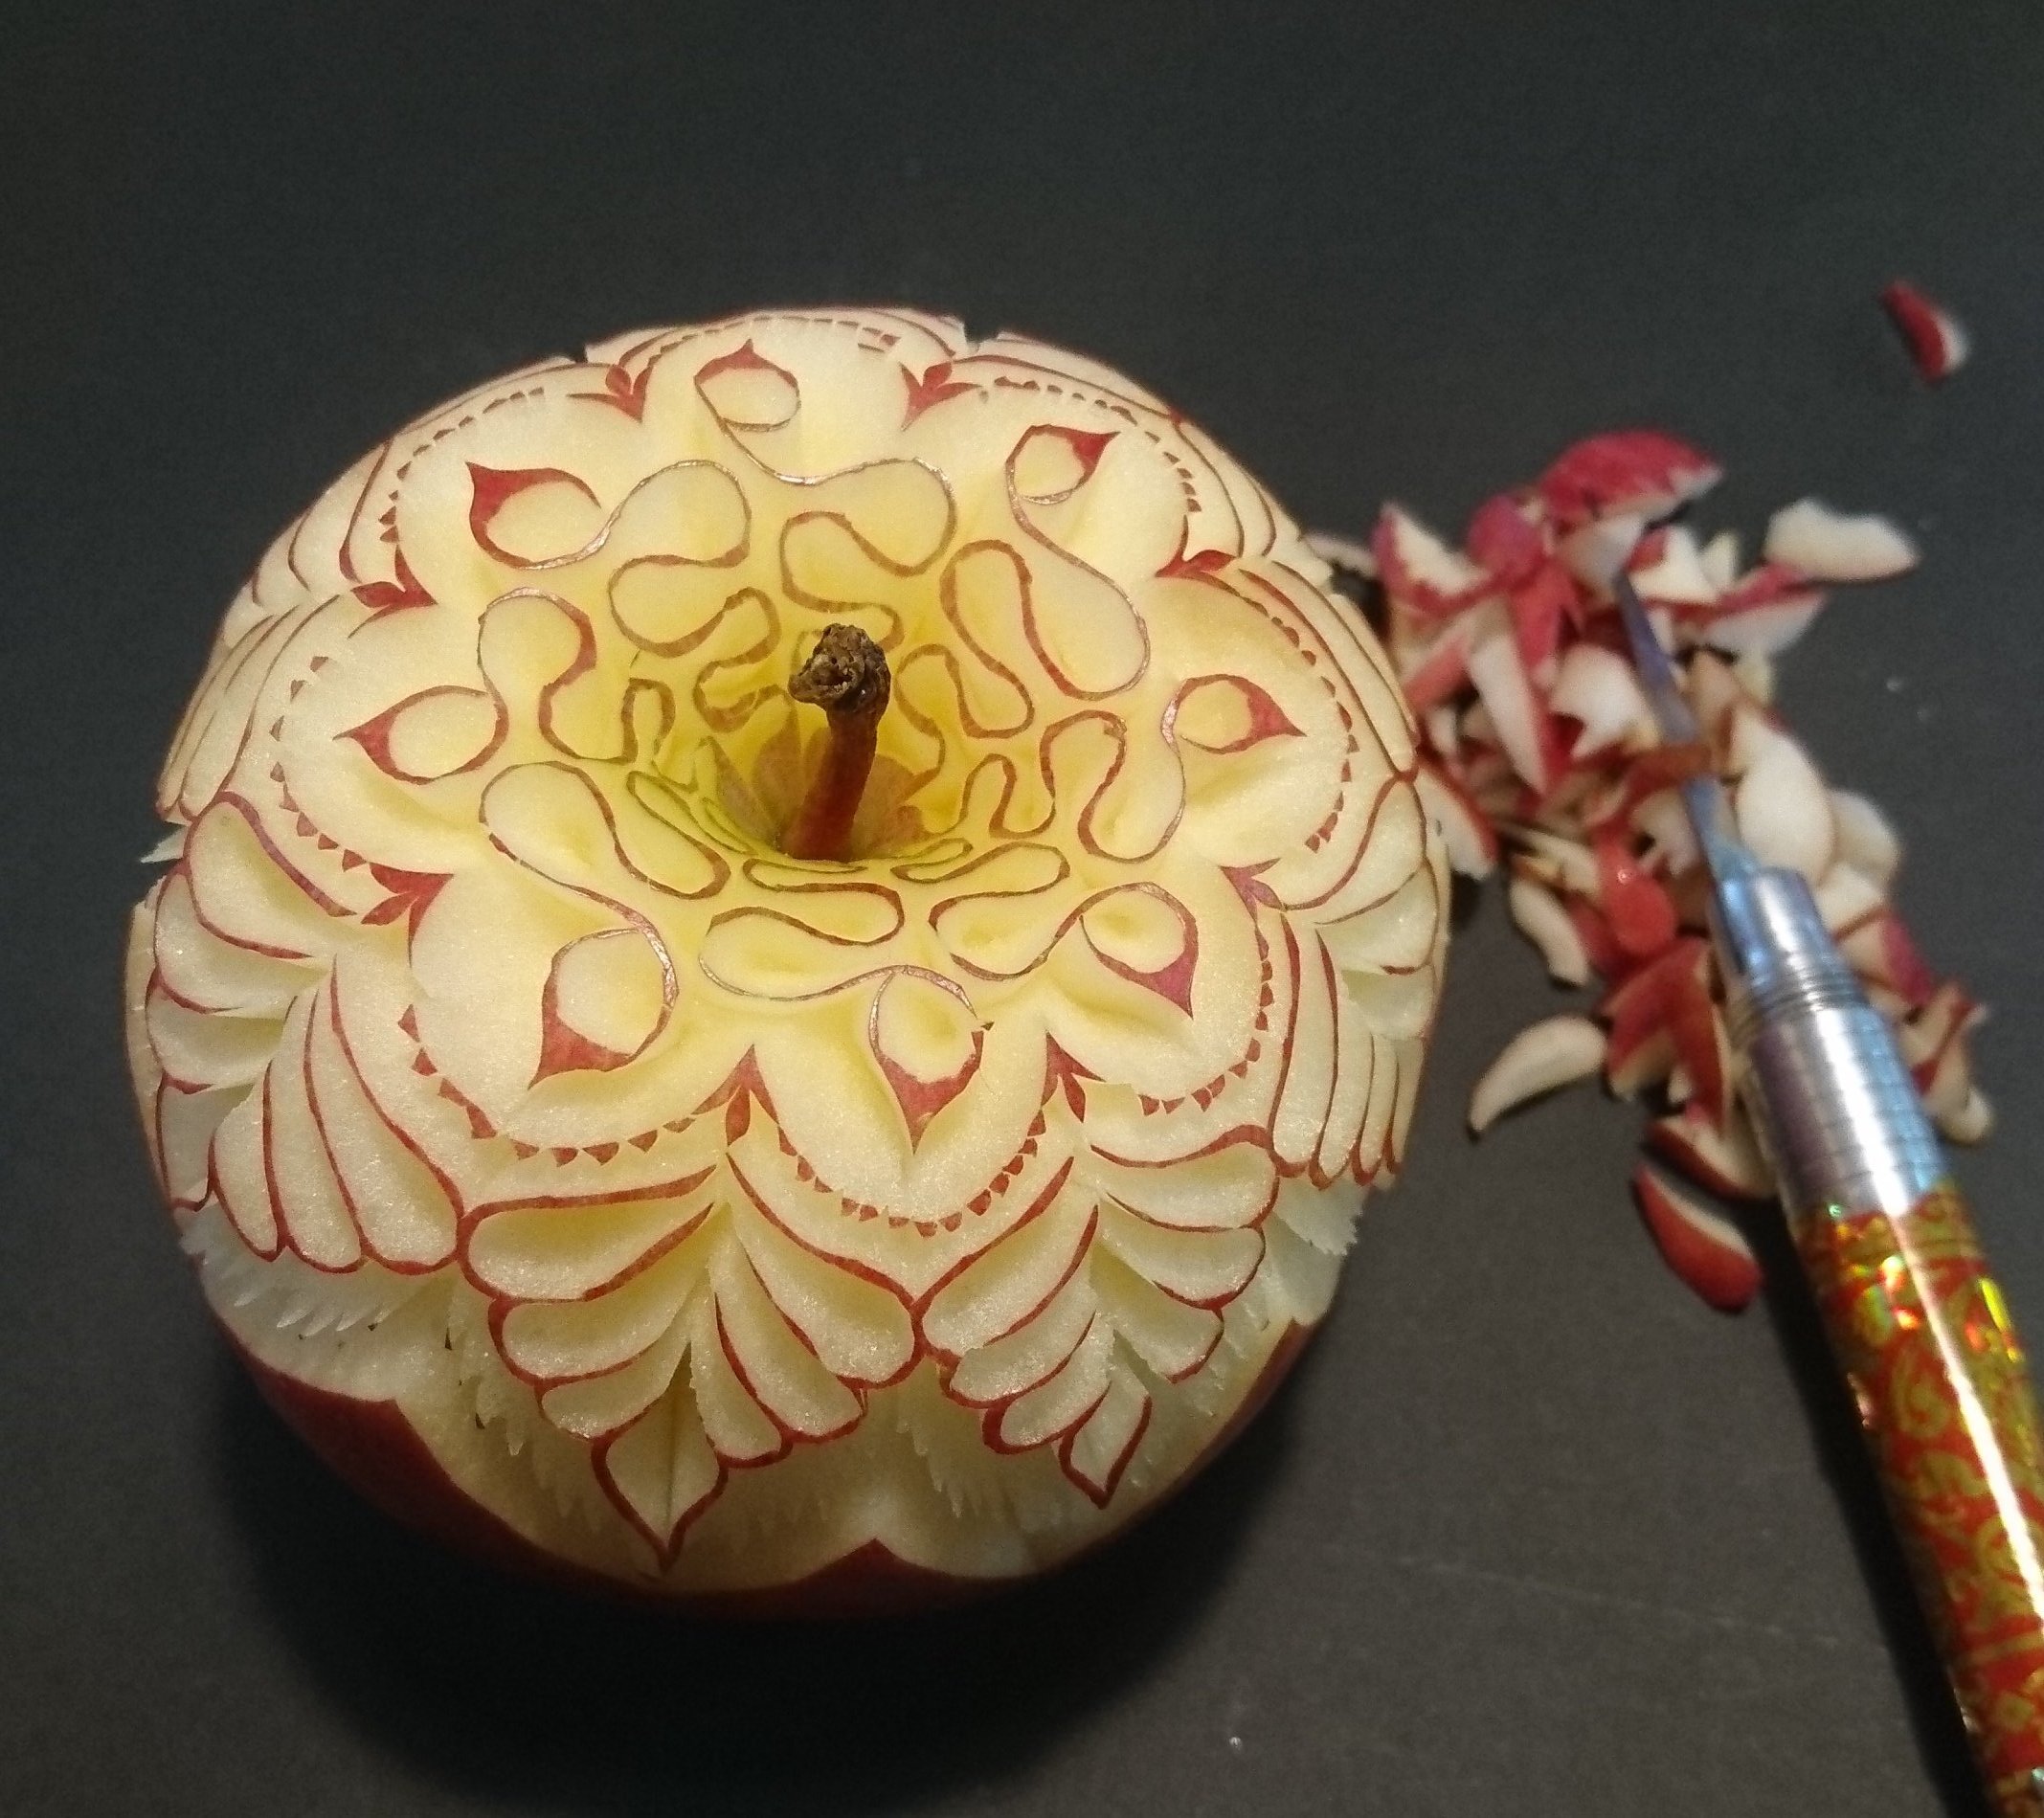 Food sculpture Artist japanese apple